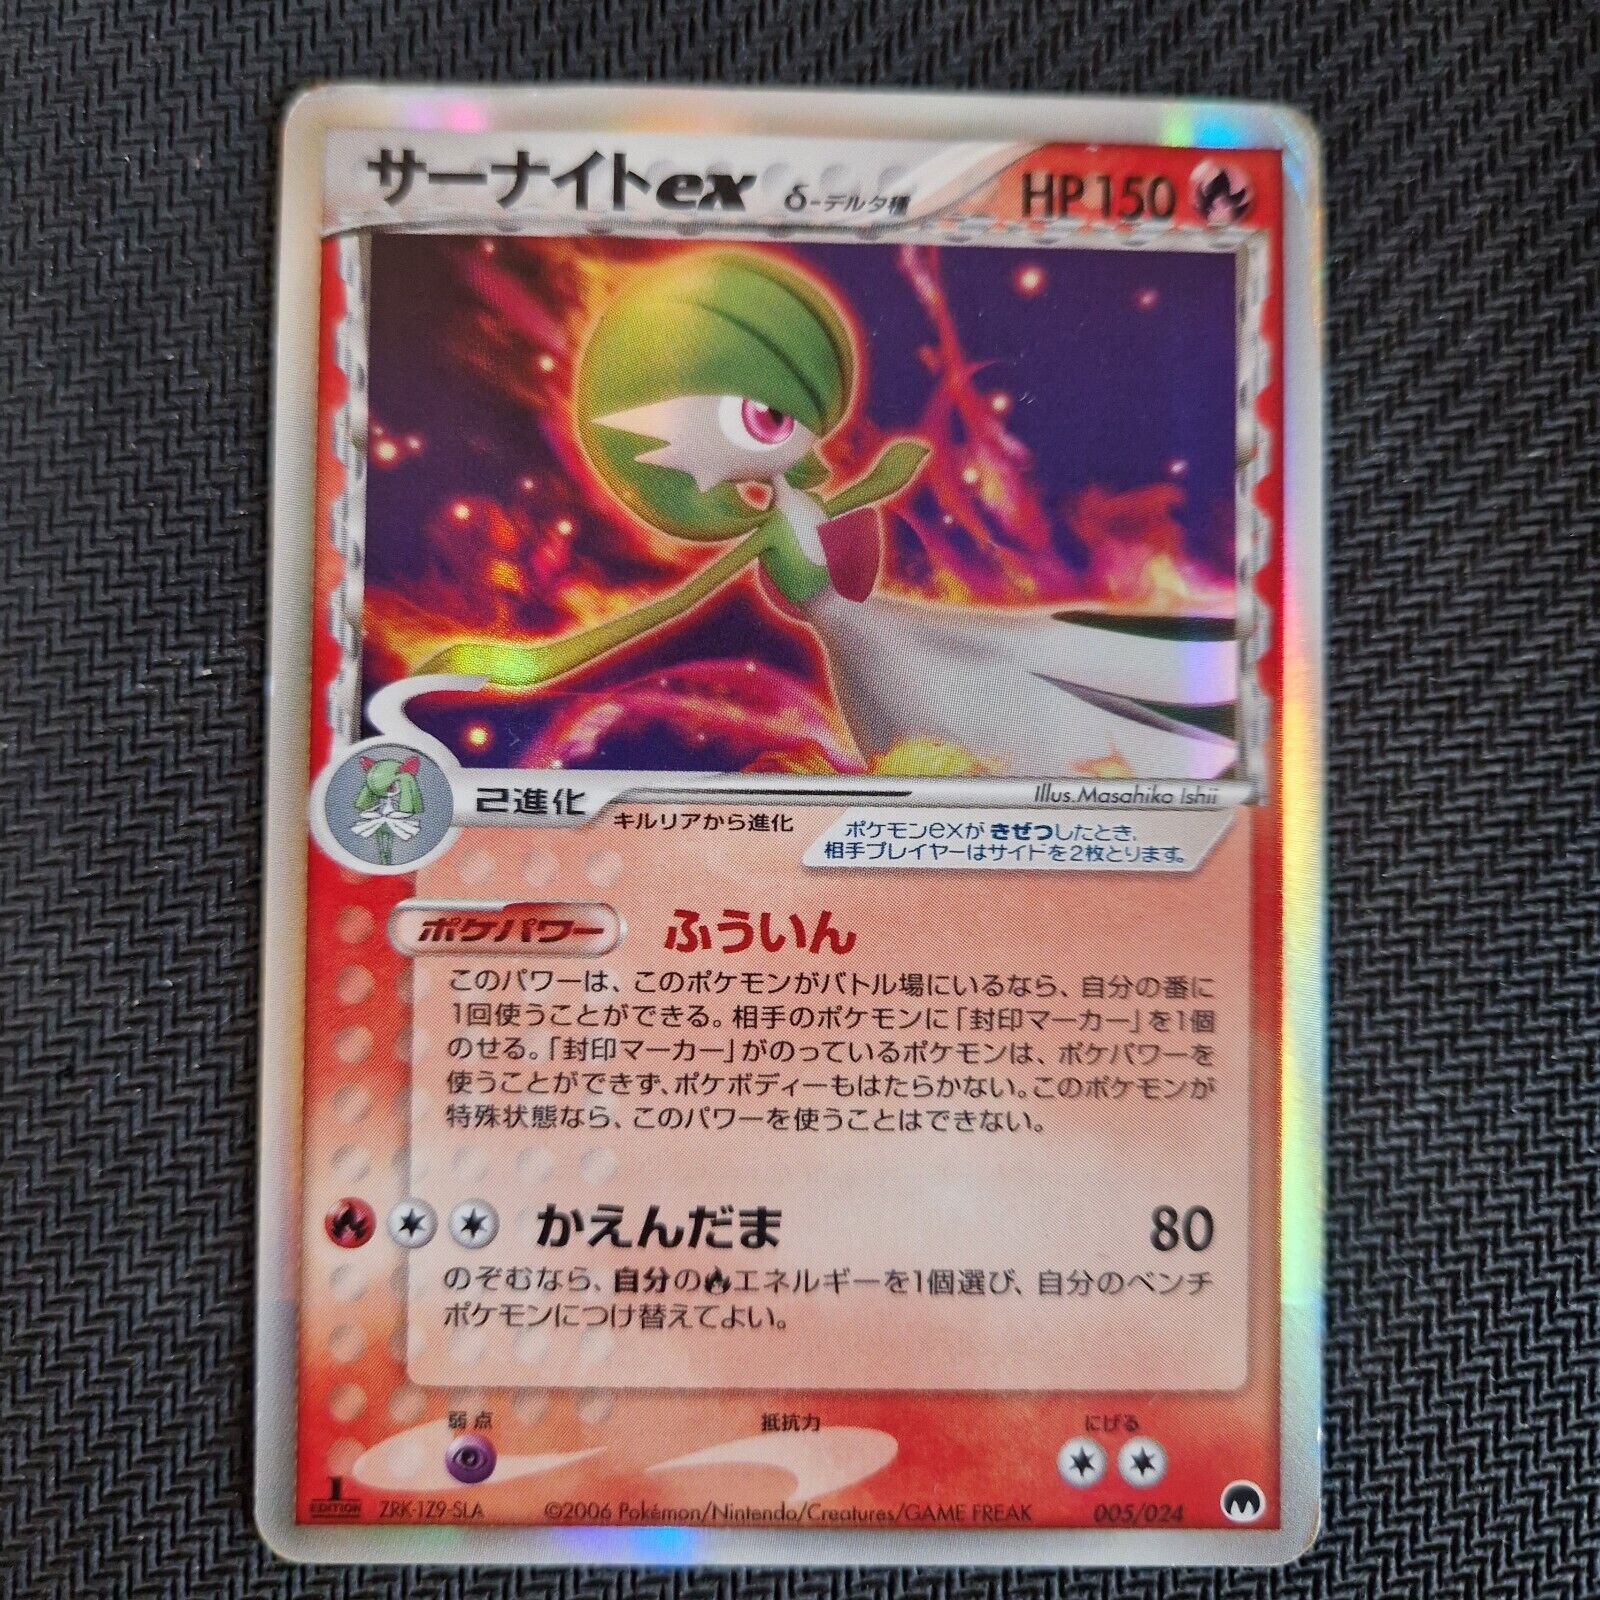 1st Edition Gardevoir - 005/024 EX Delta Species Played - Japanese Pokemon Card